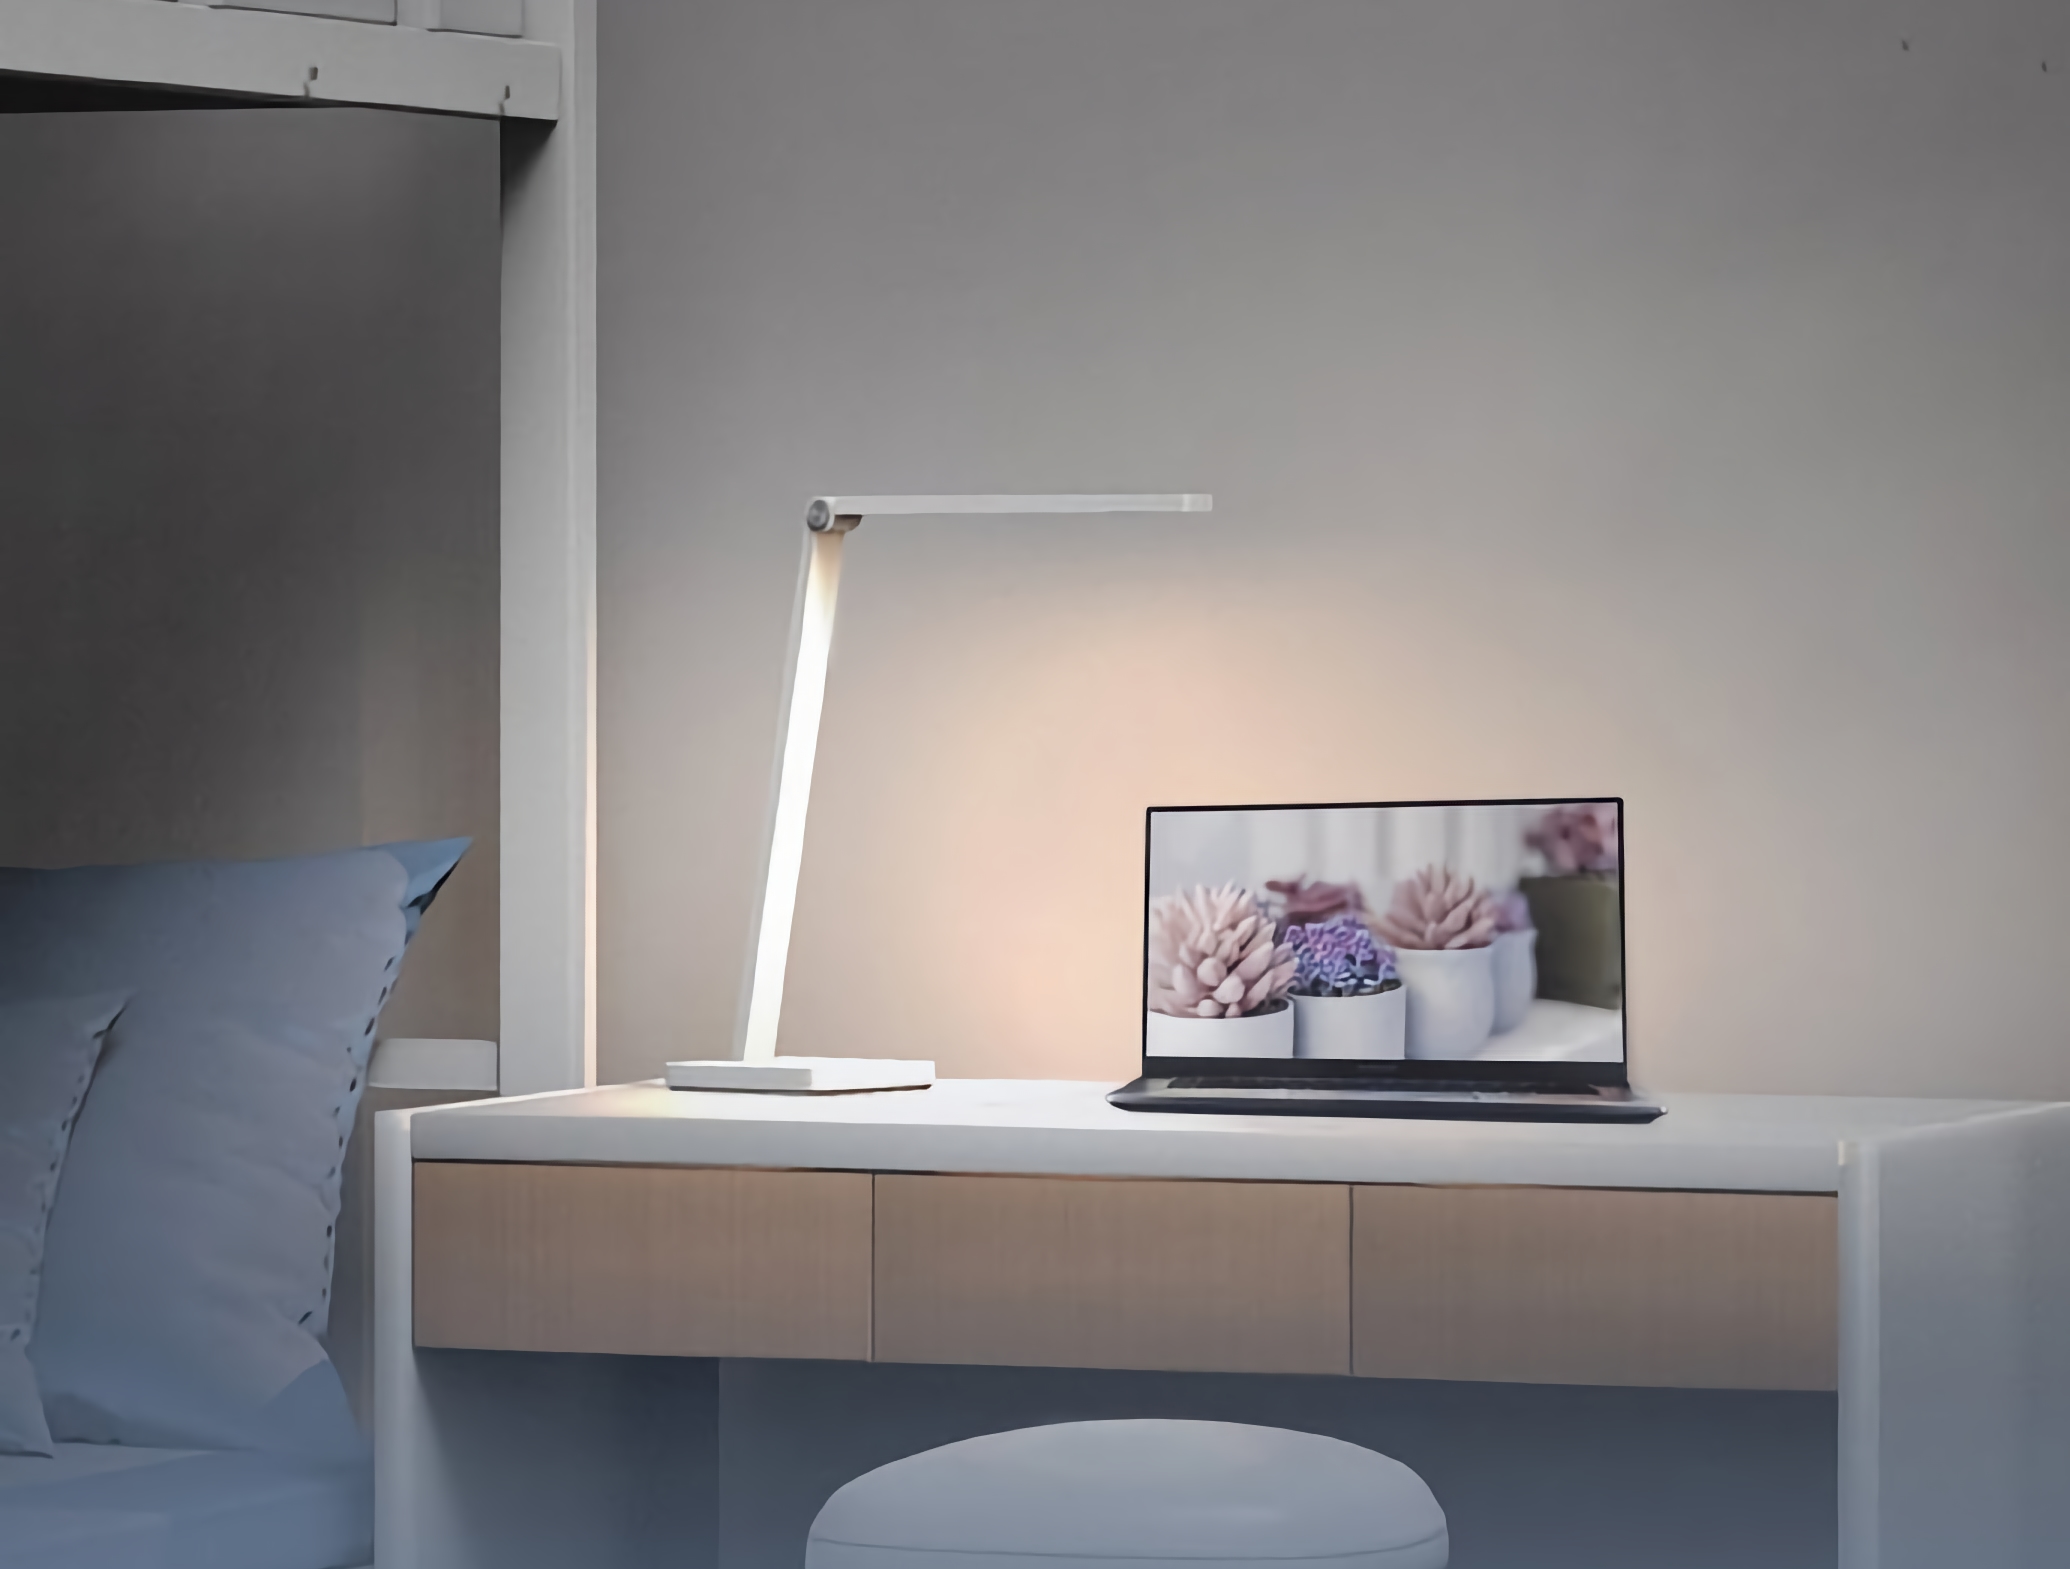 Xiaomi prezentuje MiJia Smart Desk Lamp Lite za 15 dolarów